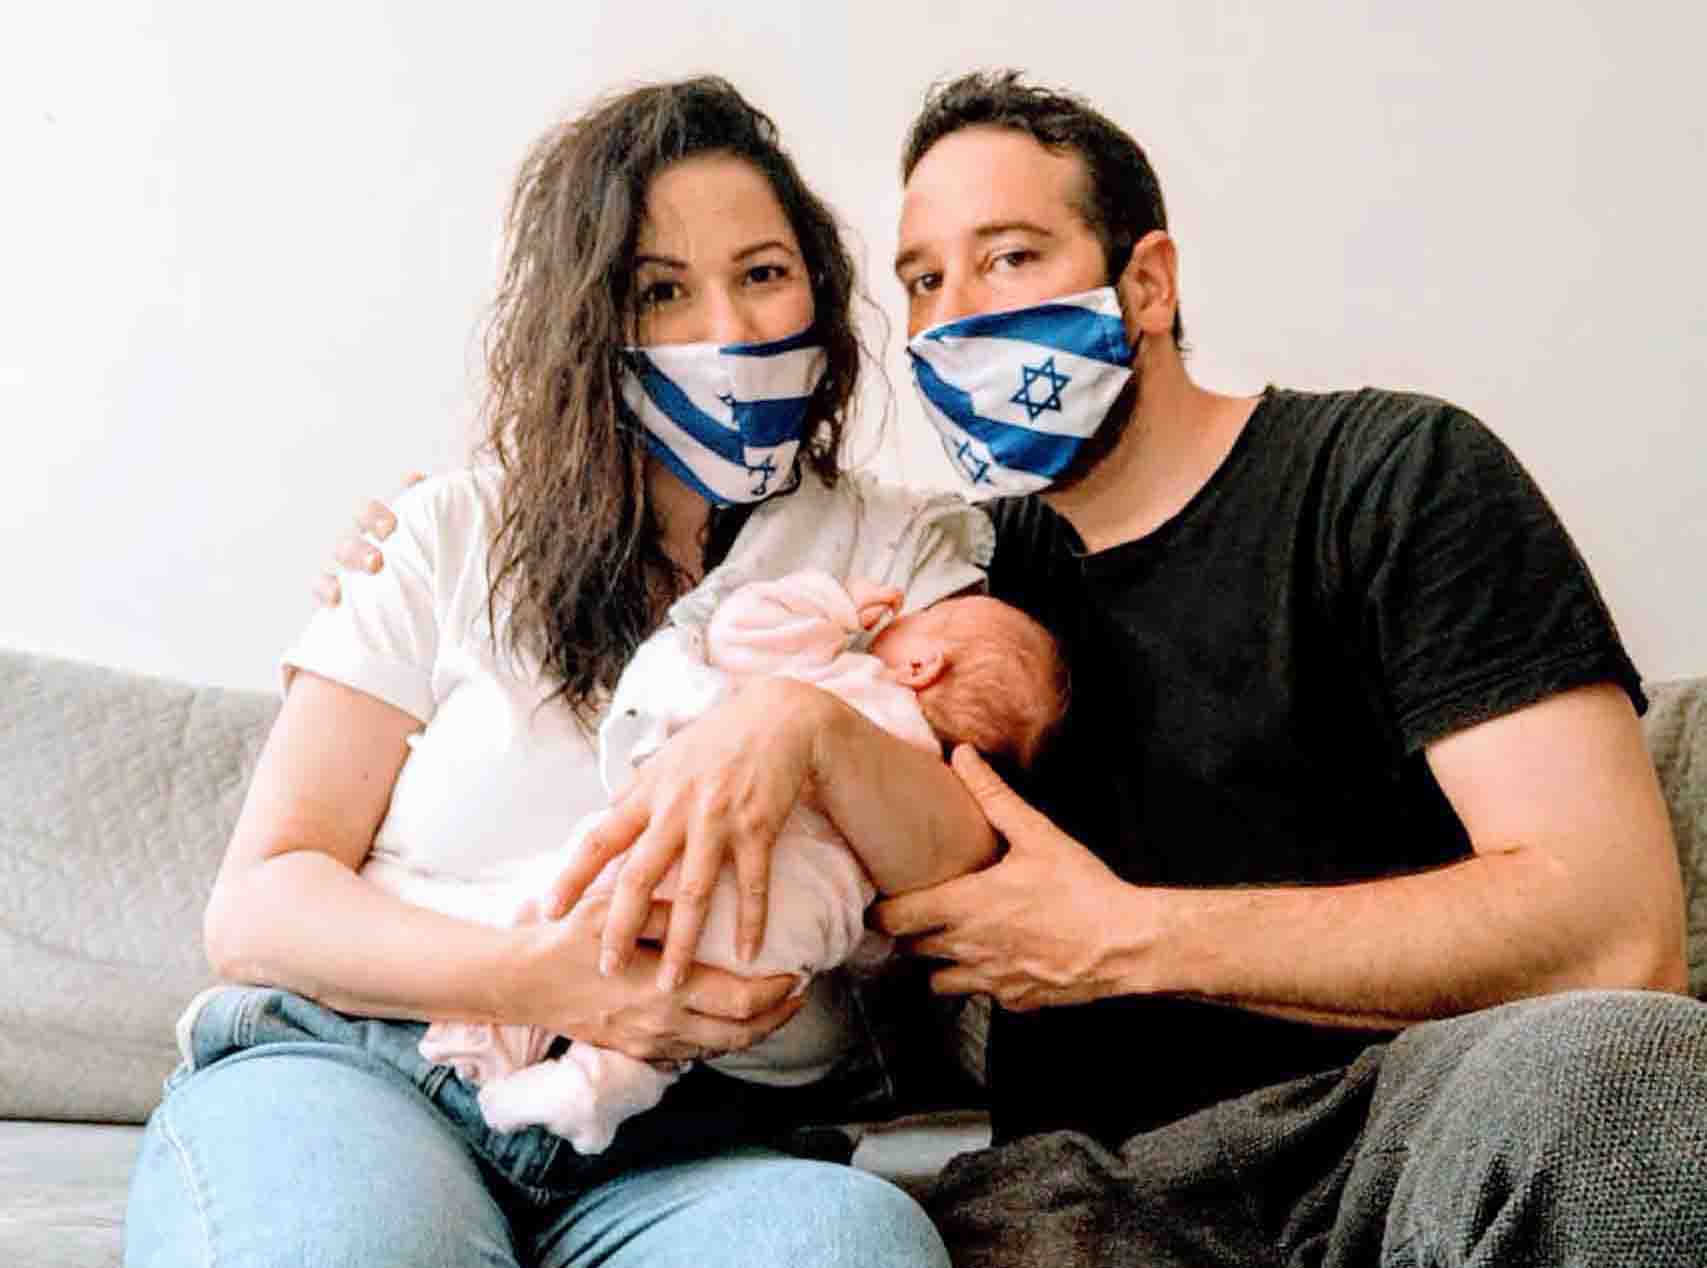 רלי לוי ובעלה אלדד זעירא_מגזין אופנה_ישראל 2020